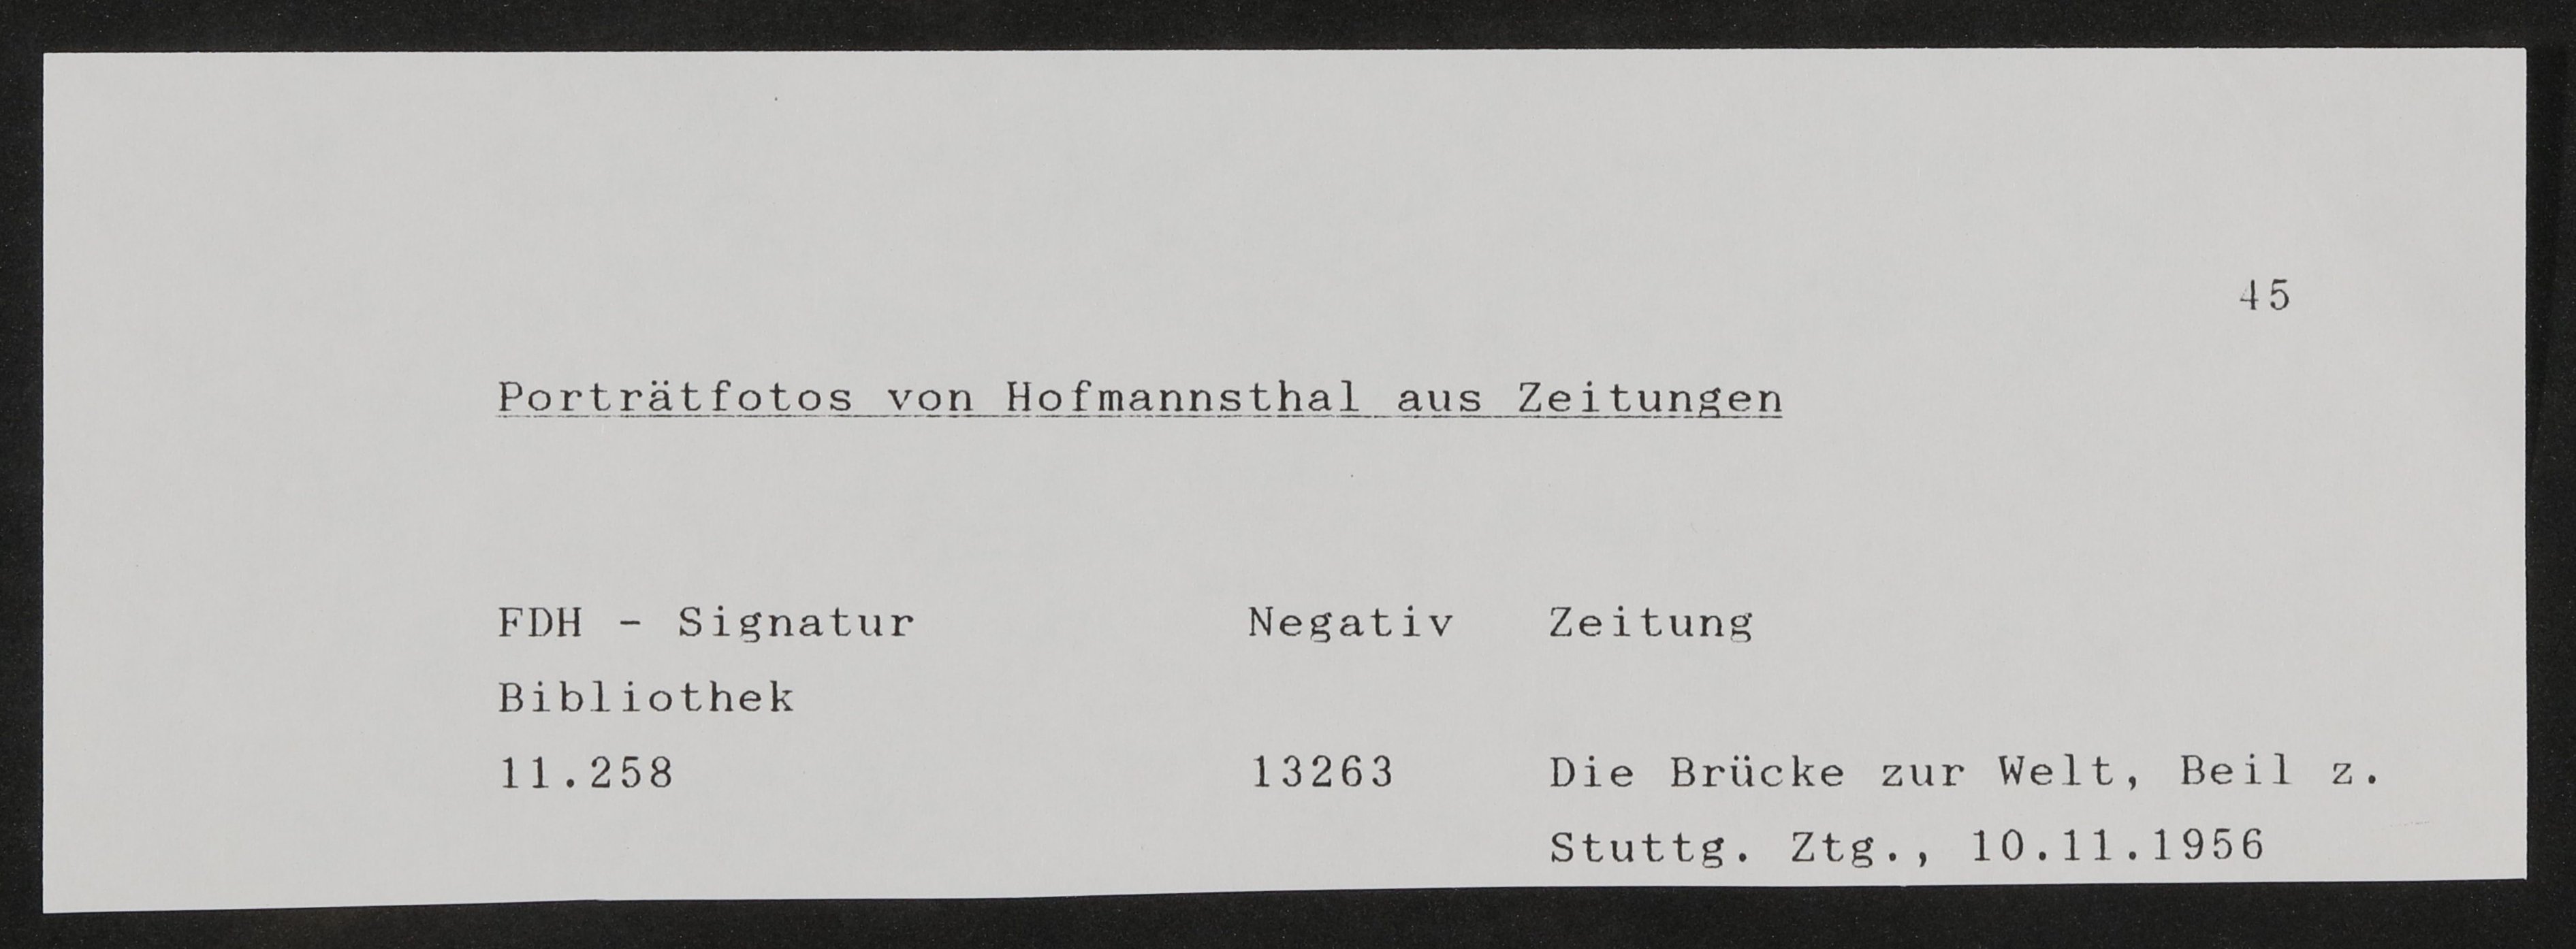 Portrait-Fotografien von Hofmannsthal aus Zeitungsausschnitten zu dessen Tod 1929 oder später (Freies Deutsches Hochstift / Frankfurter Goethe-Museum CC BY-NC-SA)